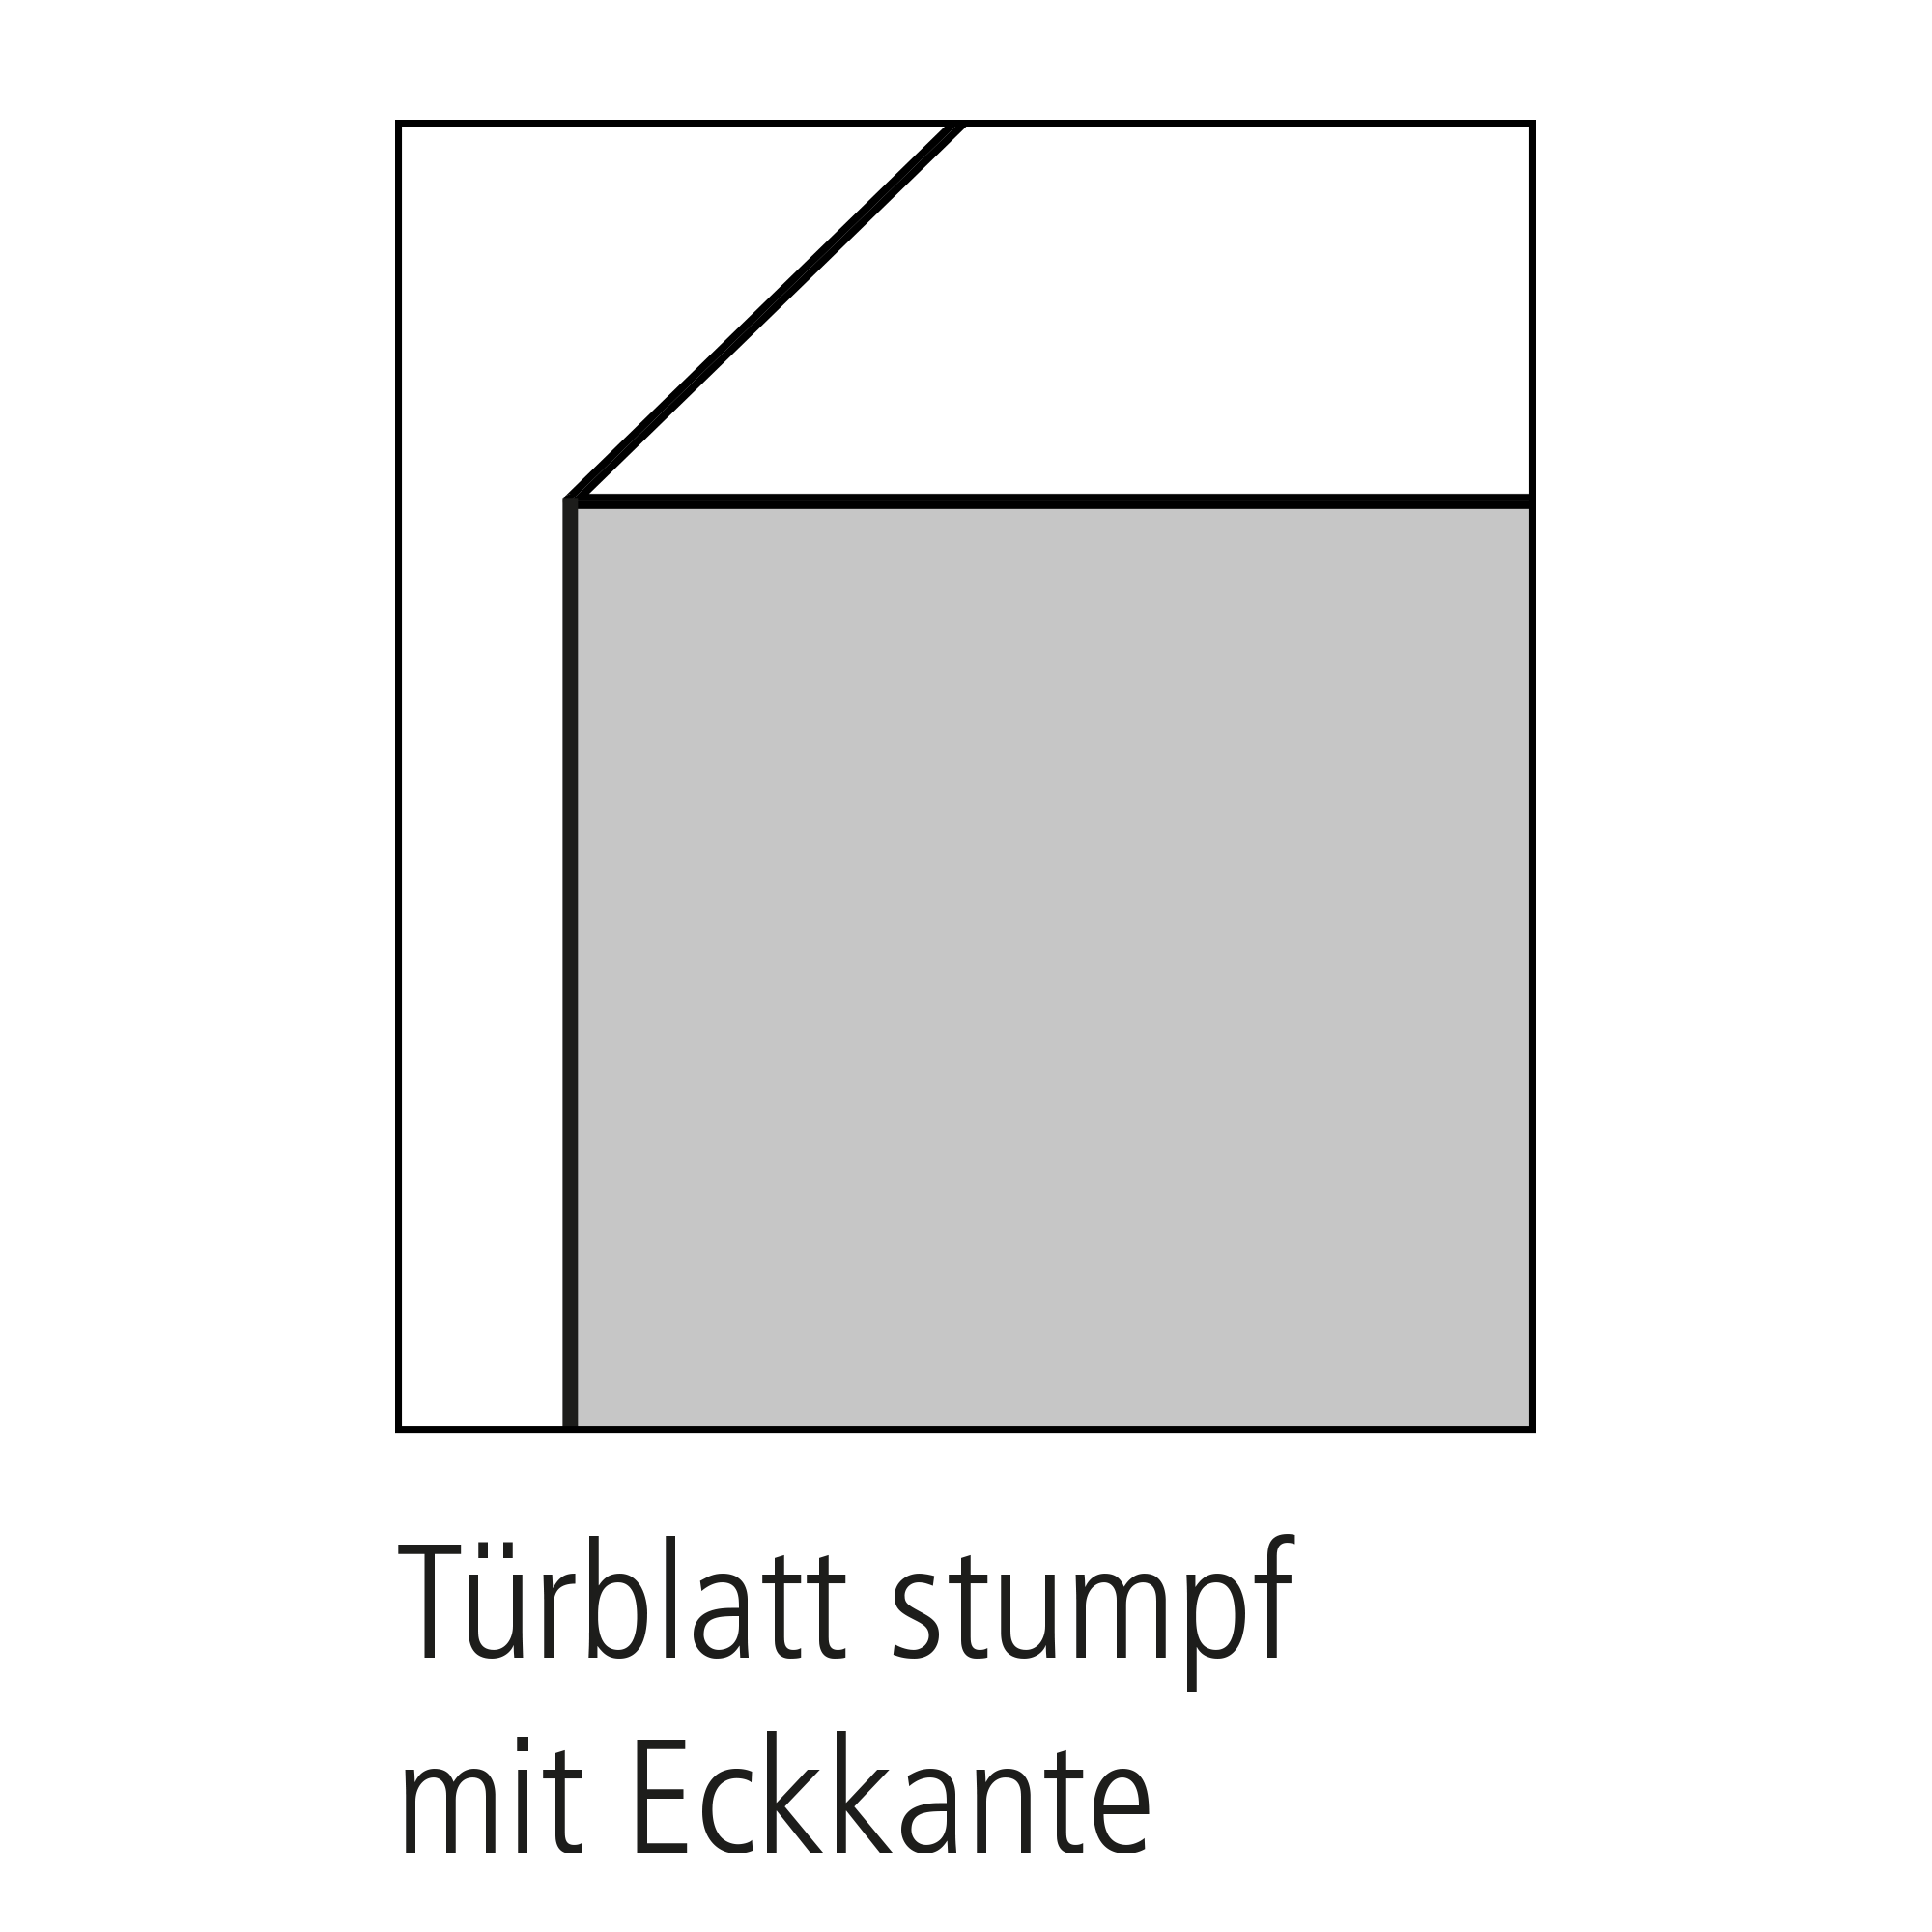 Schiebetür 'Typ 42' weiß 205 x 93,5 x 3,9 cm + product picture